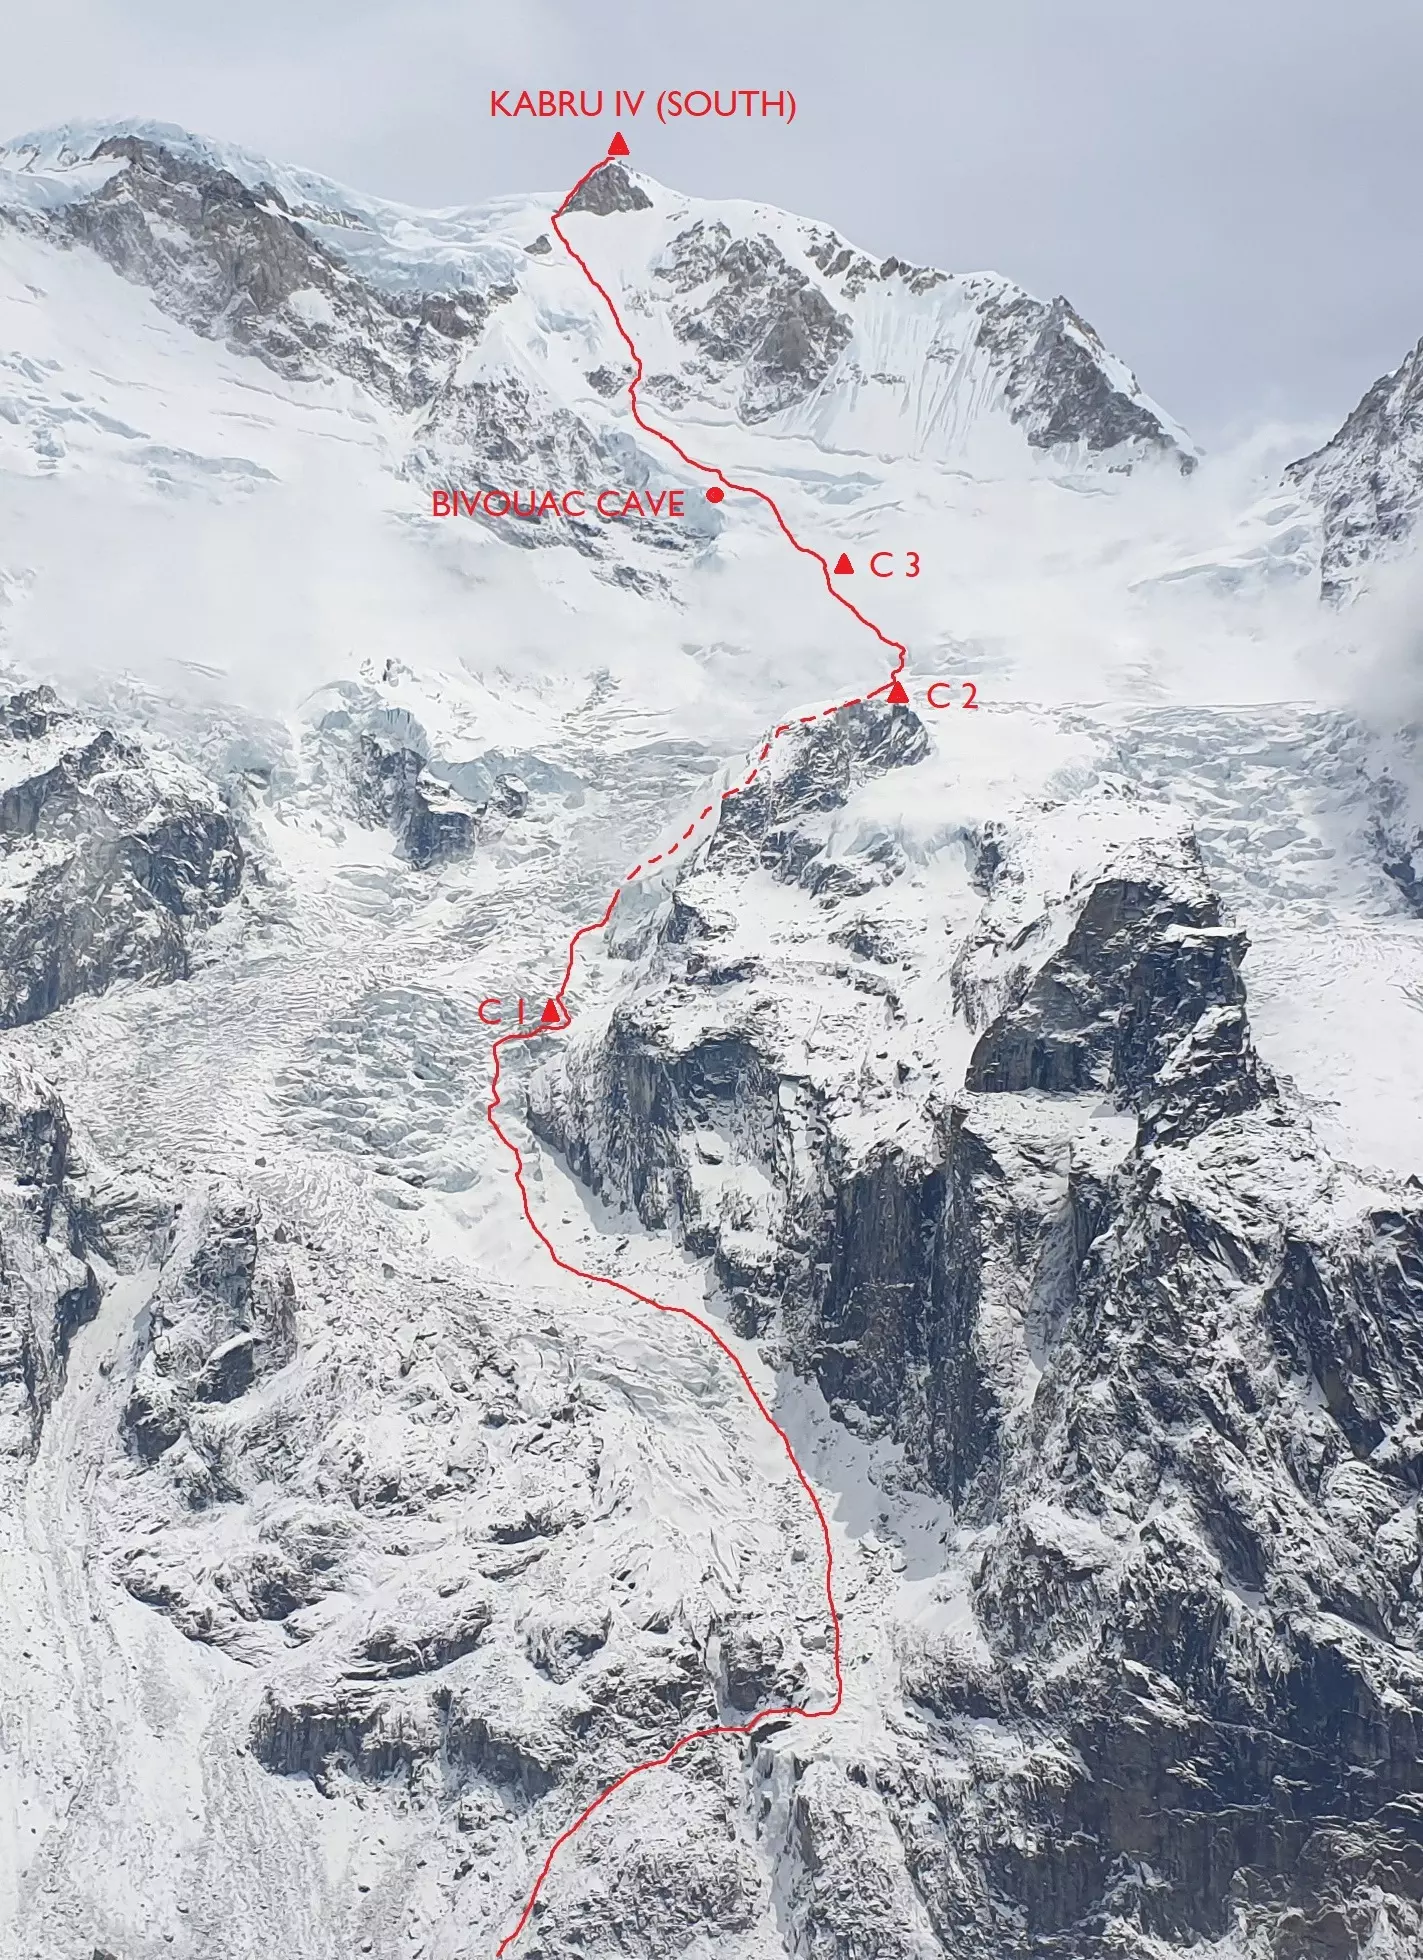 Новий маршрут "Diamonds on the Soles of the Shoes / Diamantová Cesta" (D+, 60°) на вершину Кабру Південна (Kabru South) висотою 7394 метри, розташованої на кордоні Непалу та Сіккіму, Індія